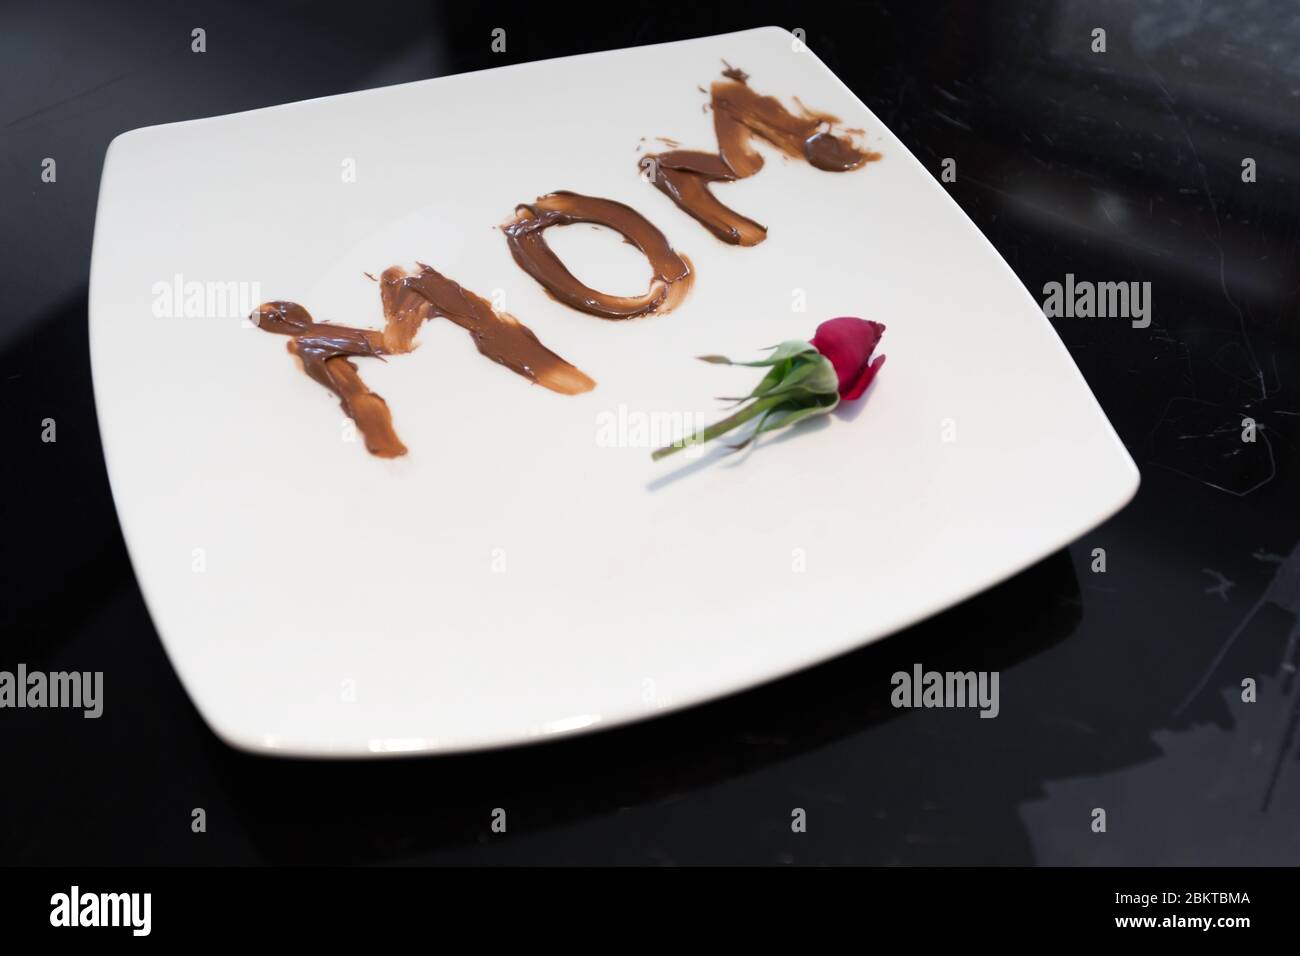 Le mot maman écrit sur une assiette avec du chocolat par sa jeune fille Banque D'Images